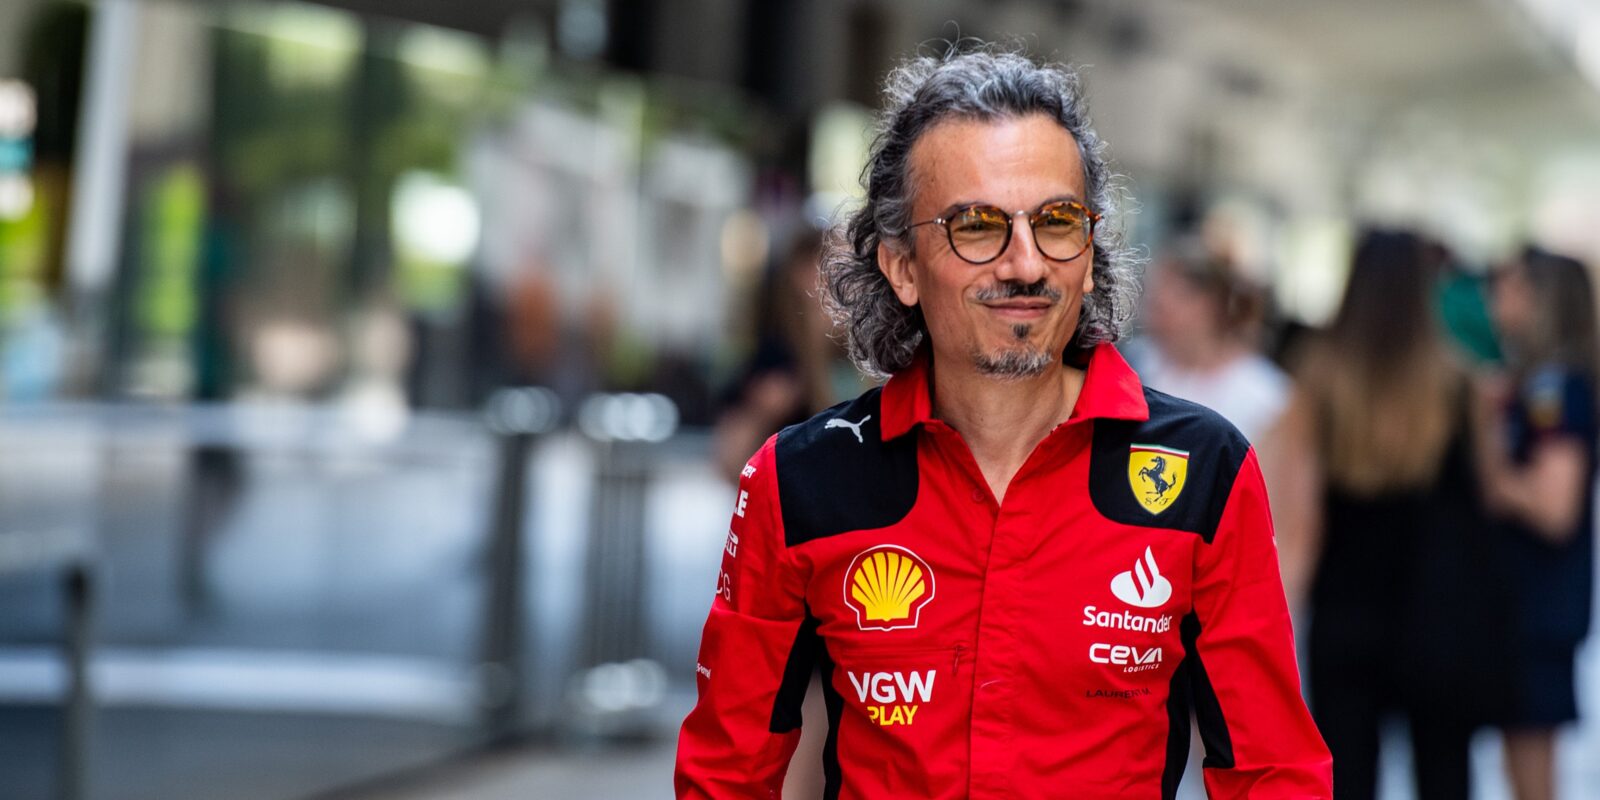 Ferrari jmenovalo nového sportovního ředitele